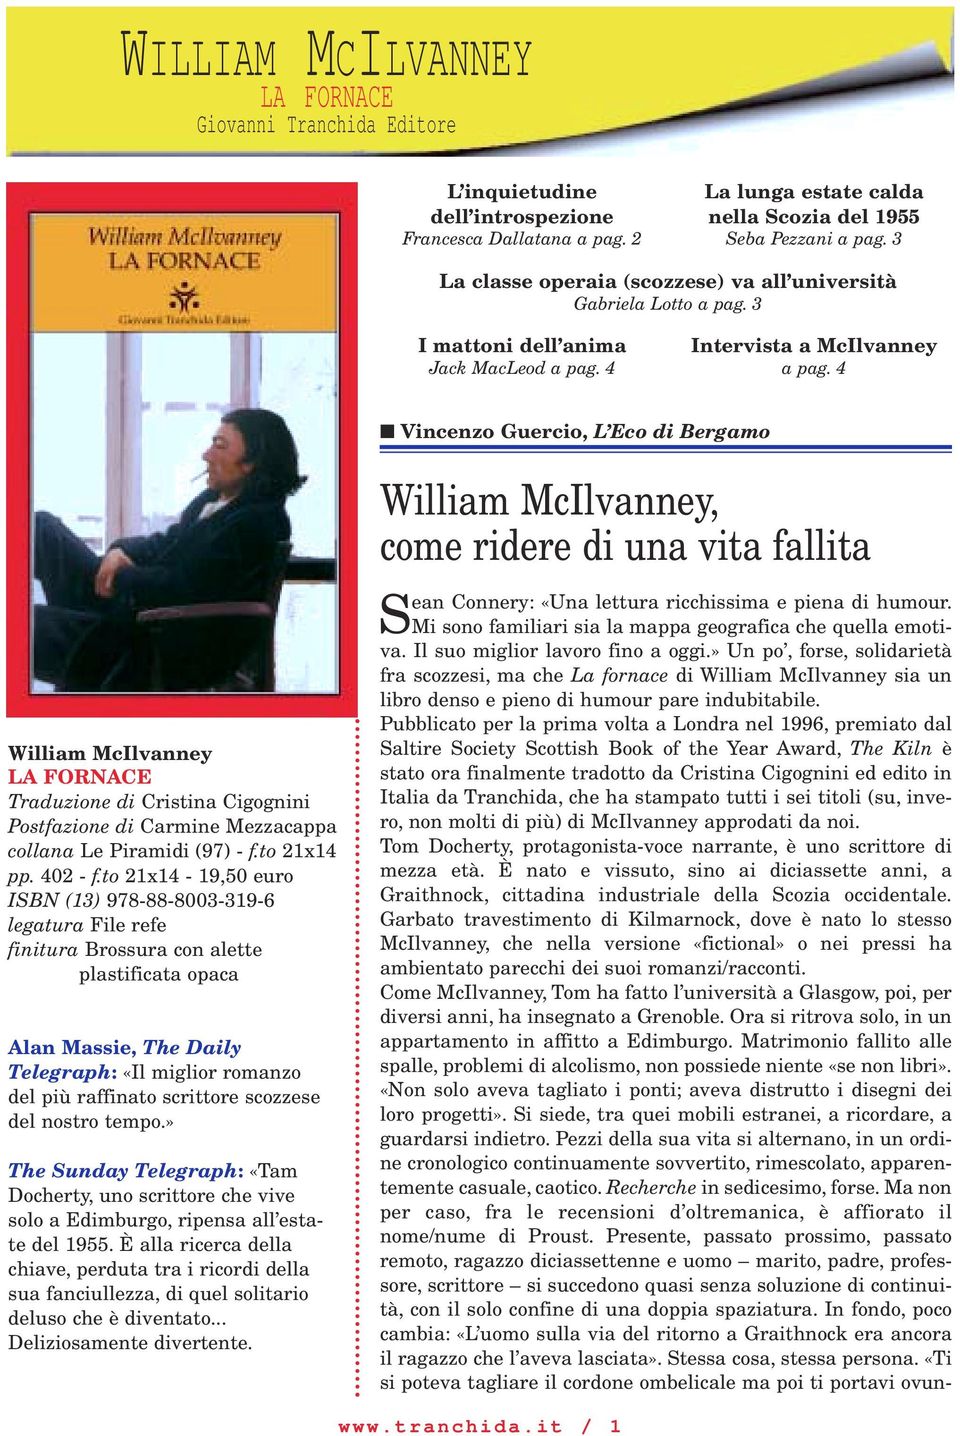 4 Vincenzo Guercio, L Eco di Bergamo William McIlvanney Traduzione di Cristina Cigognini Postfazione di Carmine Mezzacappa collana Le Piramidi (97) - f.to 21x14 pp. 402 - f.